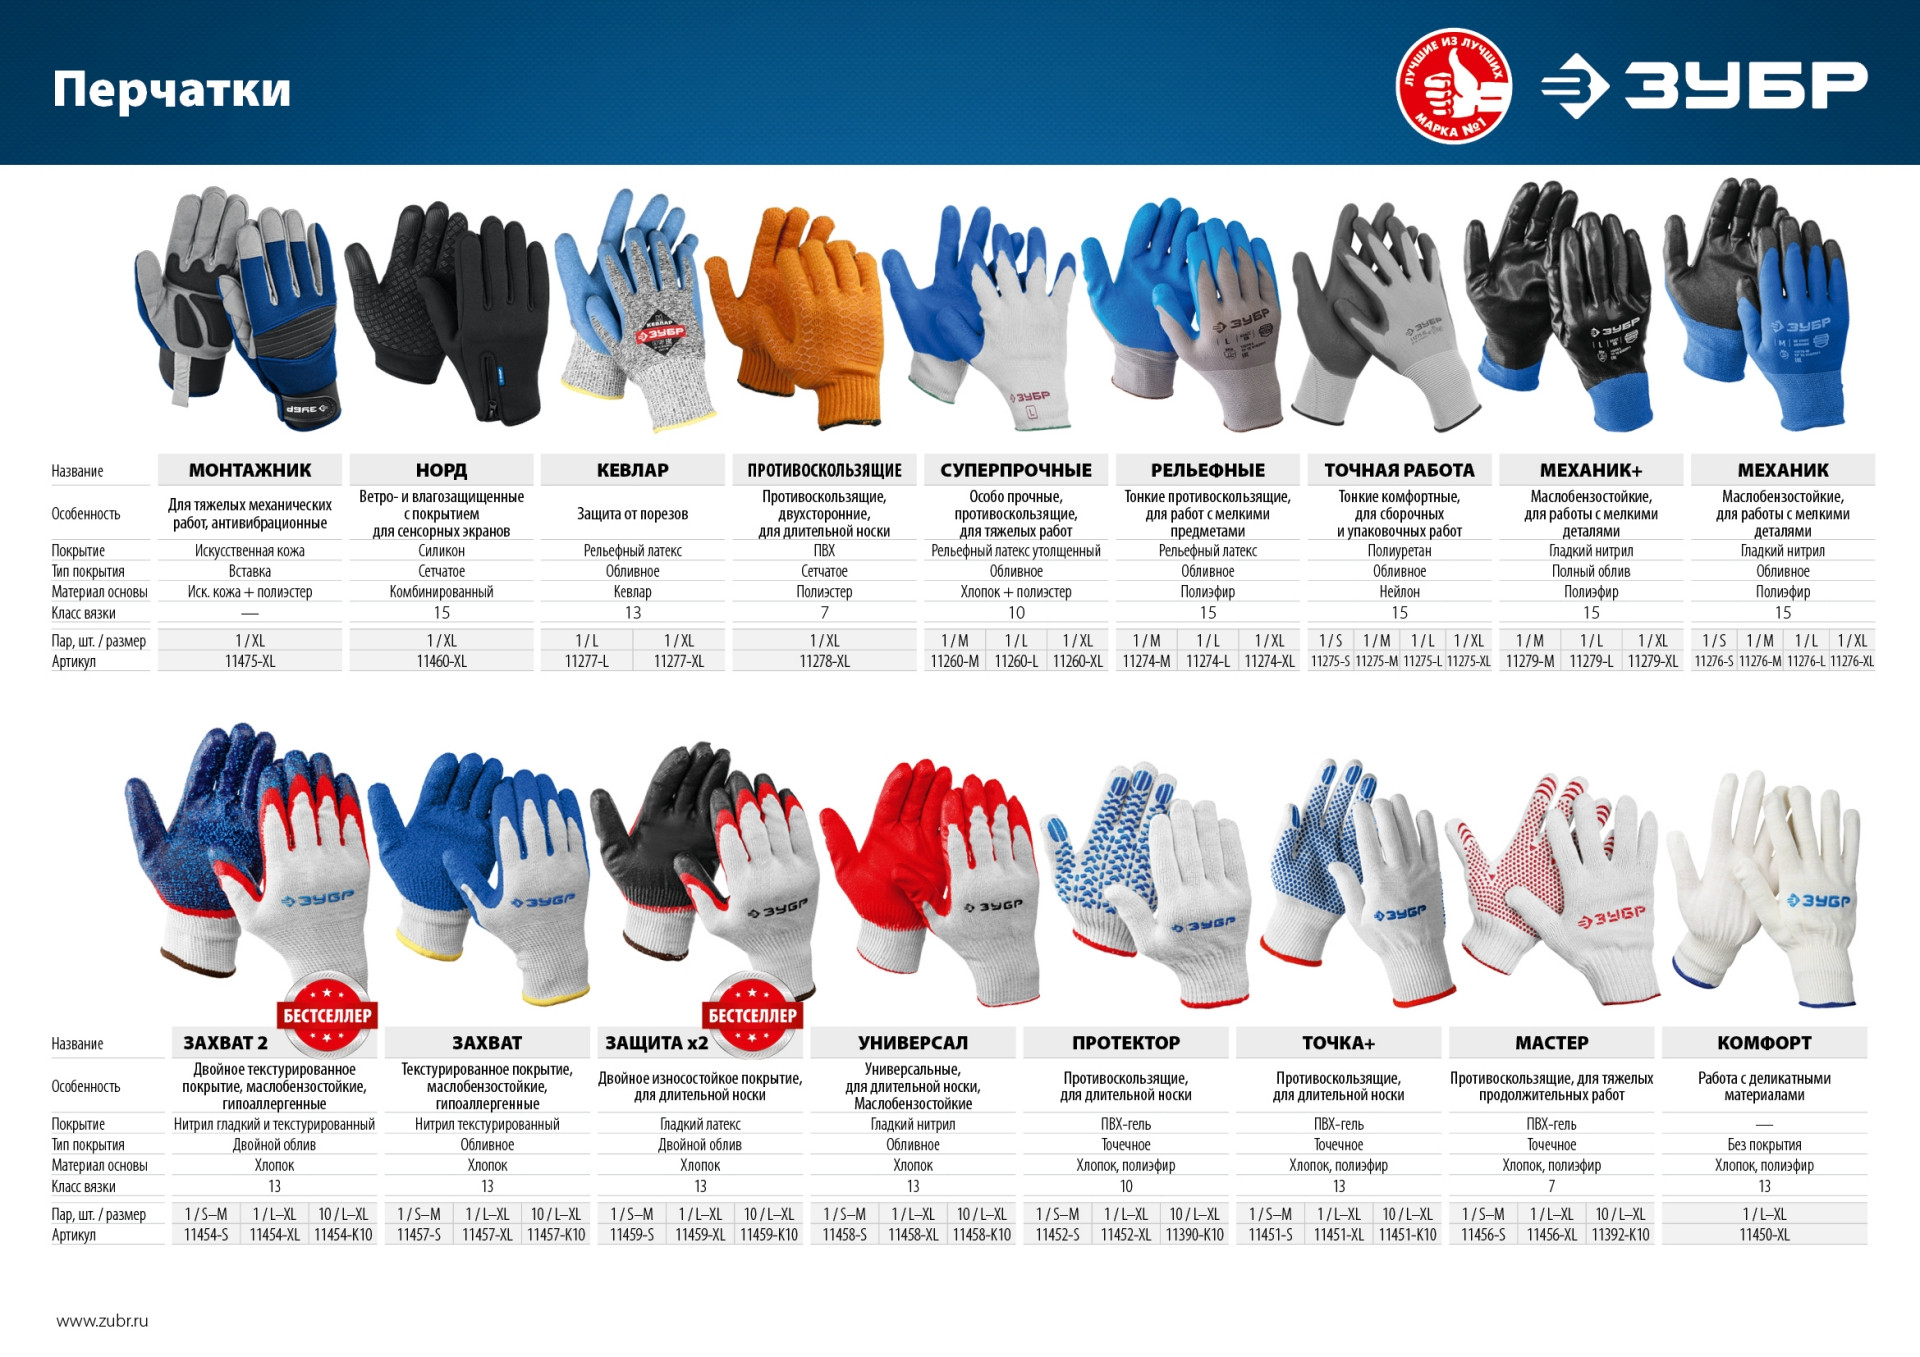 ЗУБР х2 ЗАЩИТА, S-M, х/б перчатки с двойным латексным обливом, повышенной износостойкости, 13 класс (11459-S)